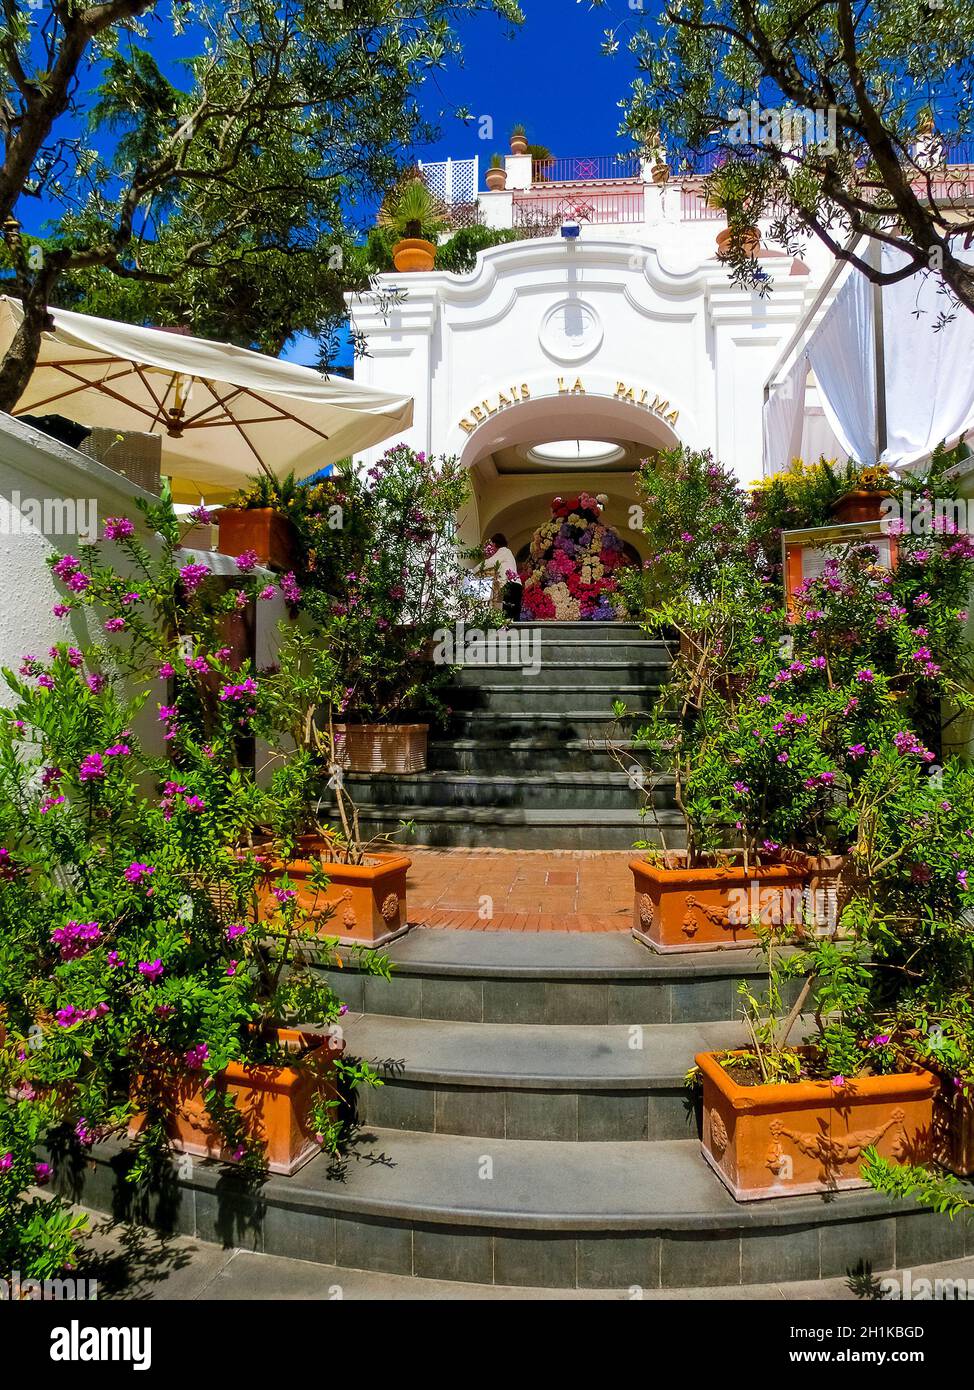 Capri, Italy - May 04, 2014: The main entrance at Hotel La Palma in old center of Capri, Italy on May 04, 2014 Stock Photo